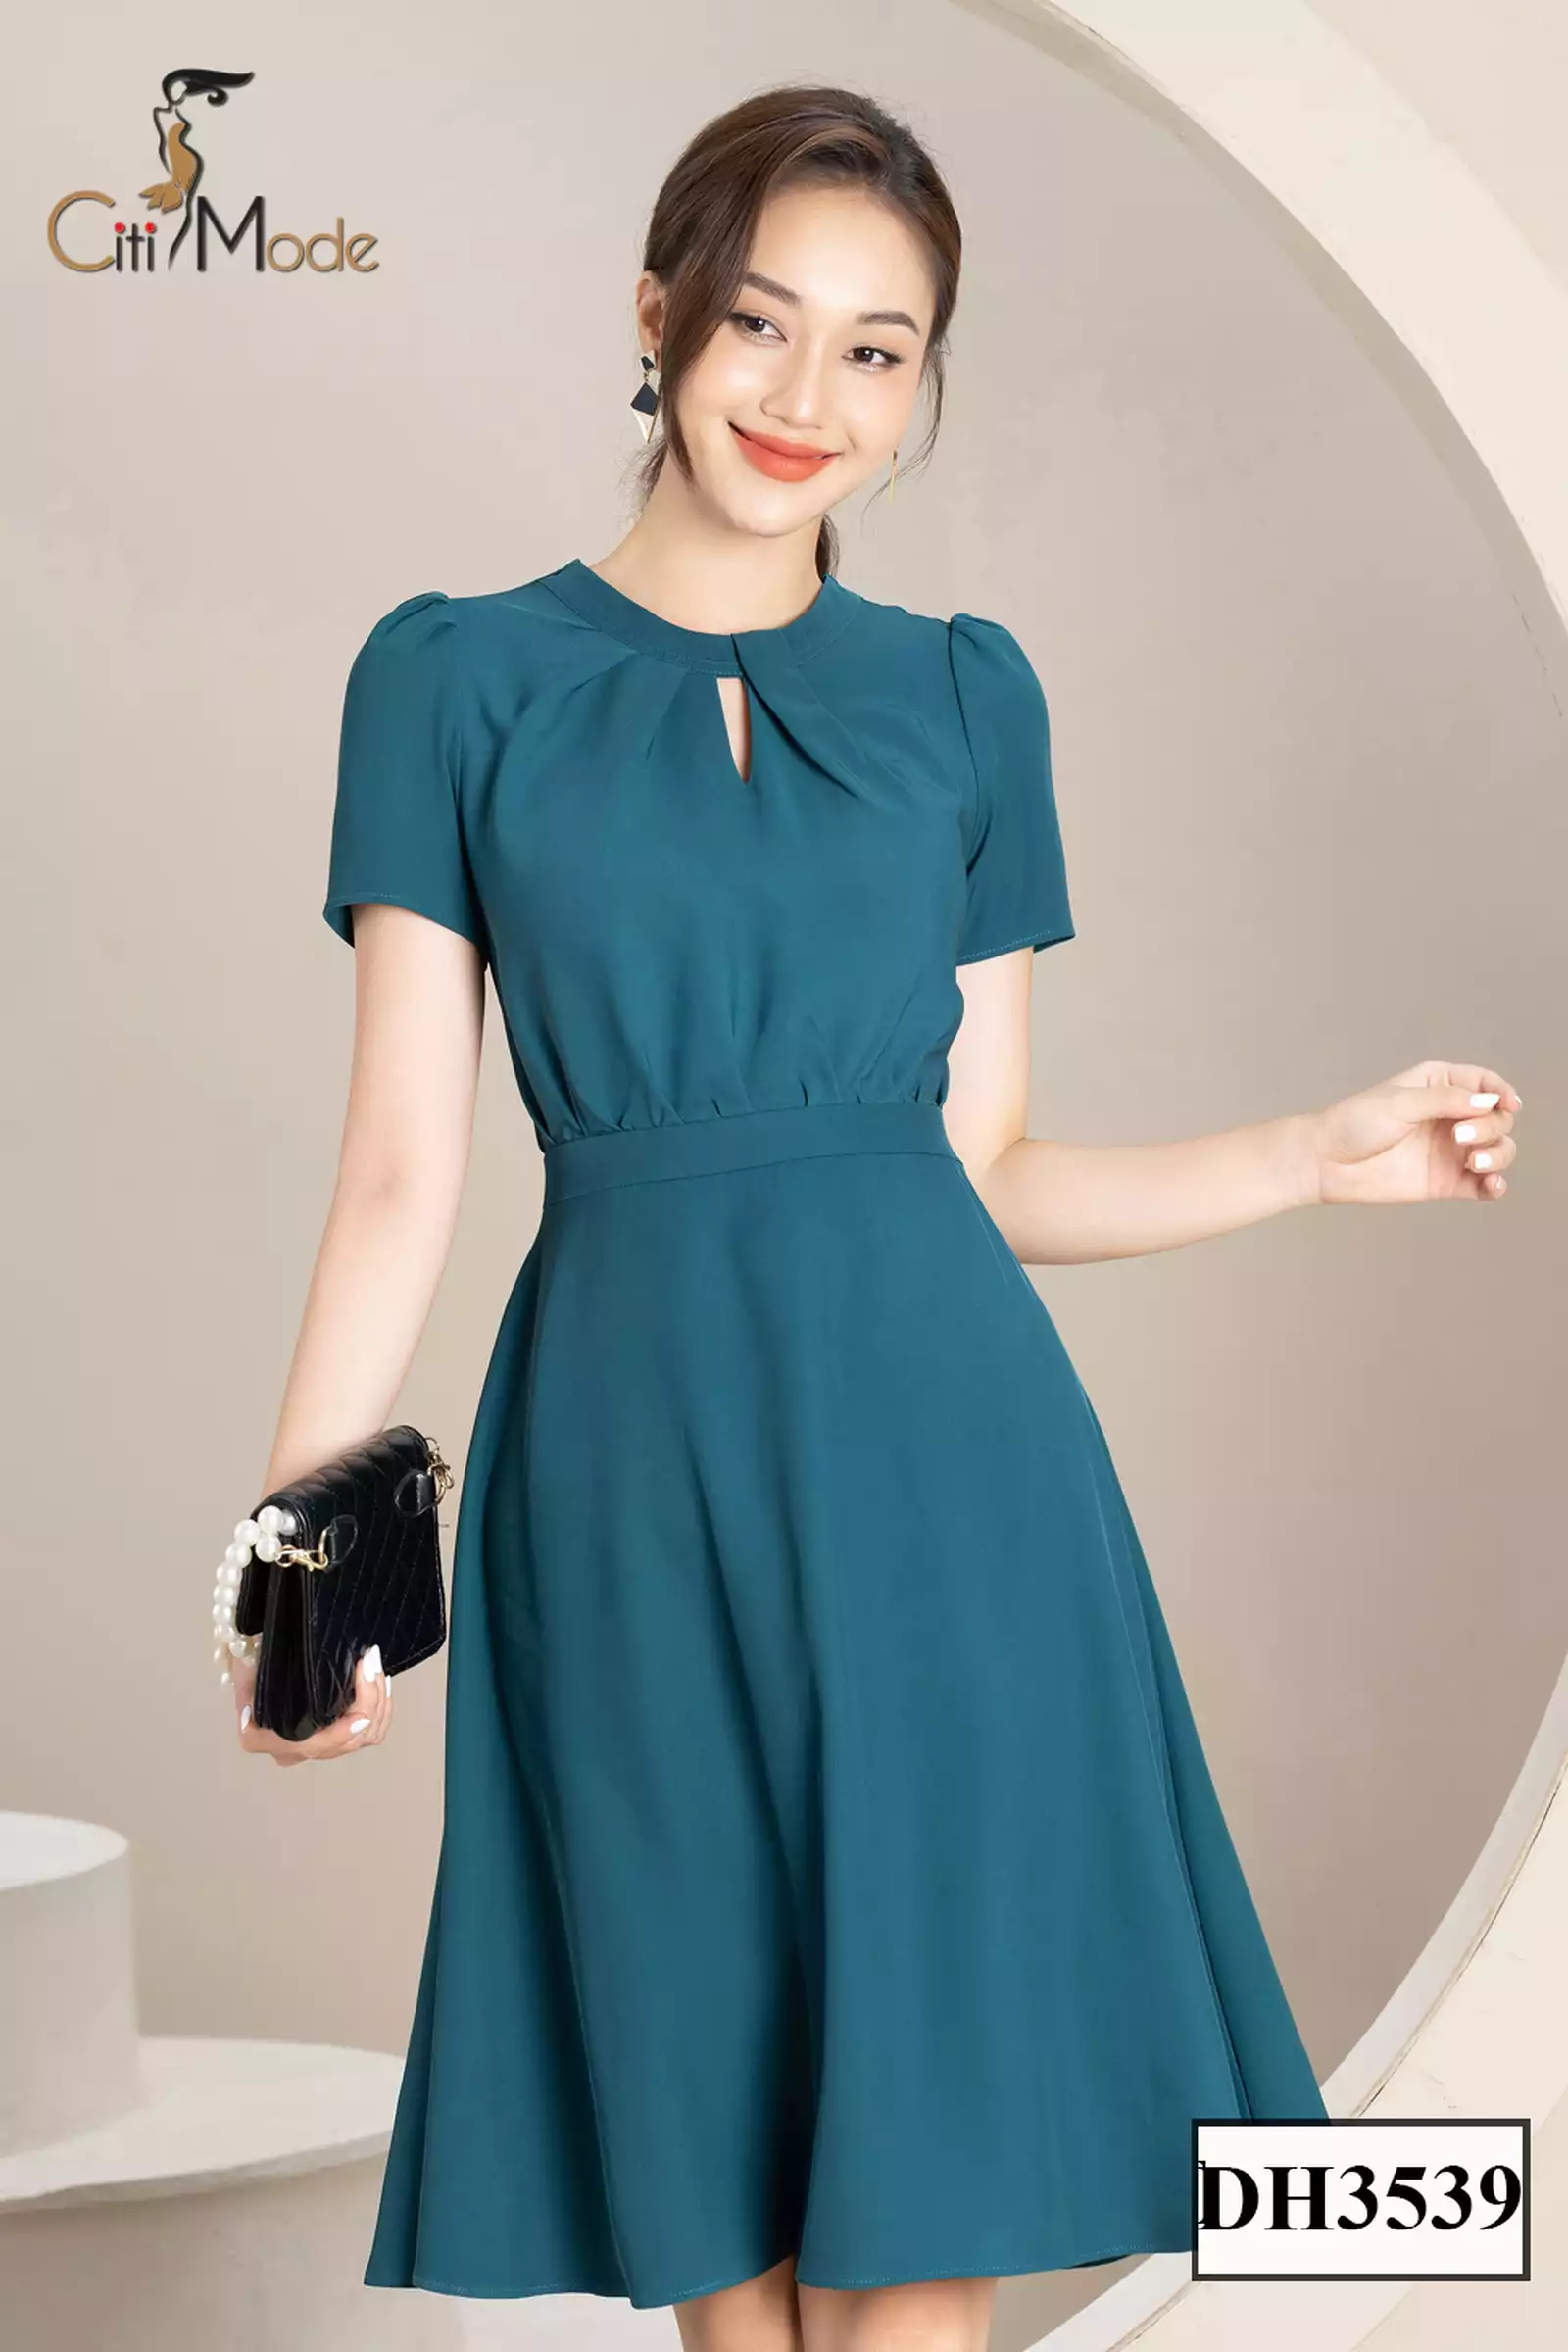 Đầm dạ hội màu xanh với phong cách SANG TRỌNG đẳng cấp